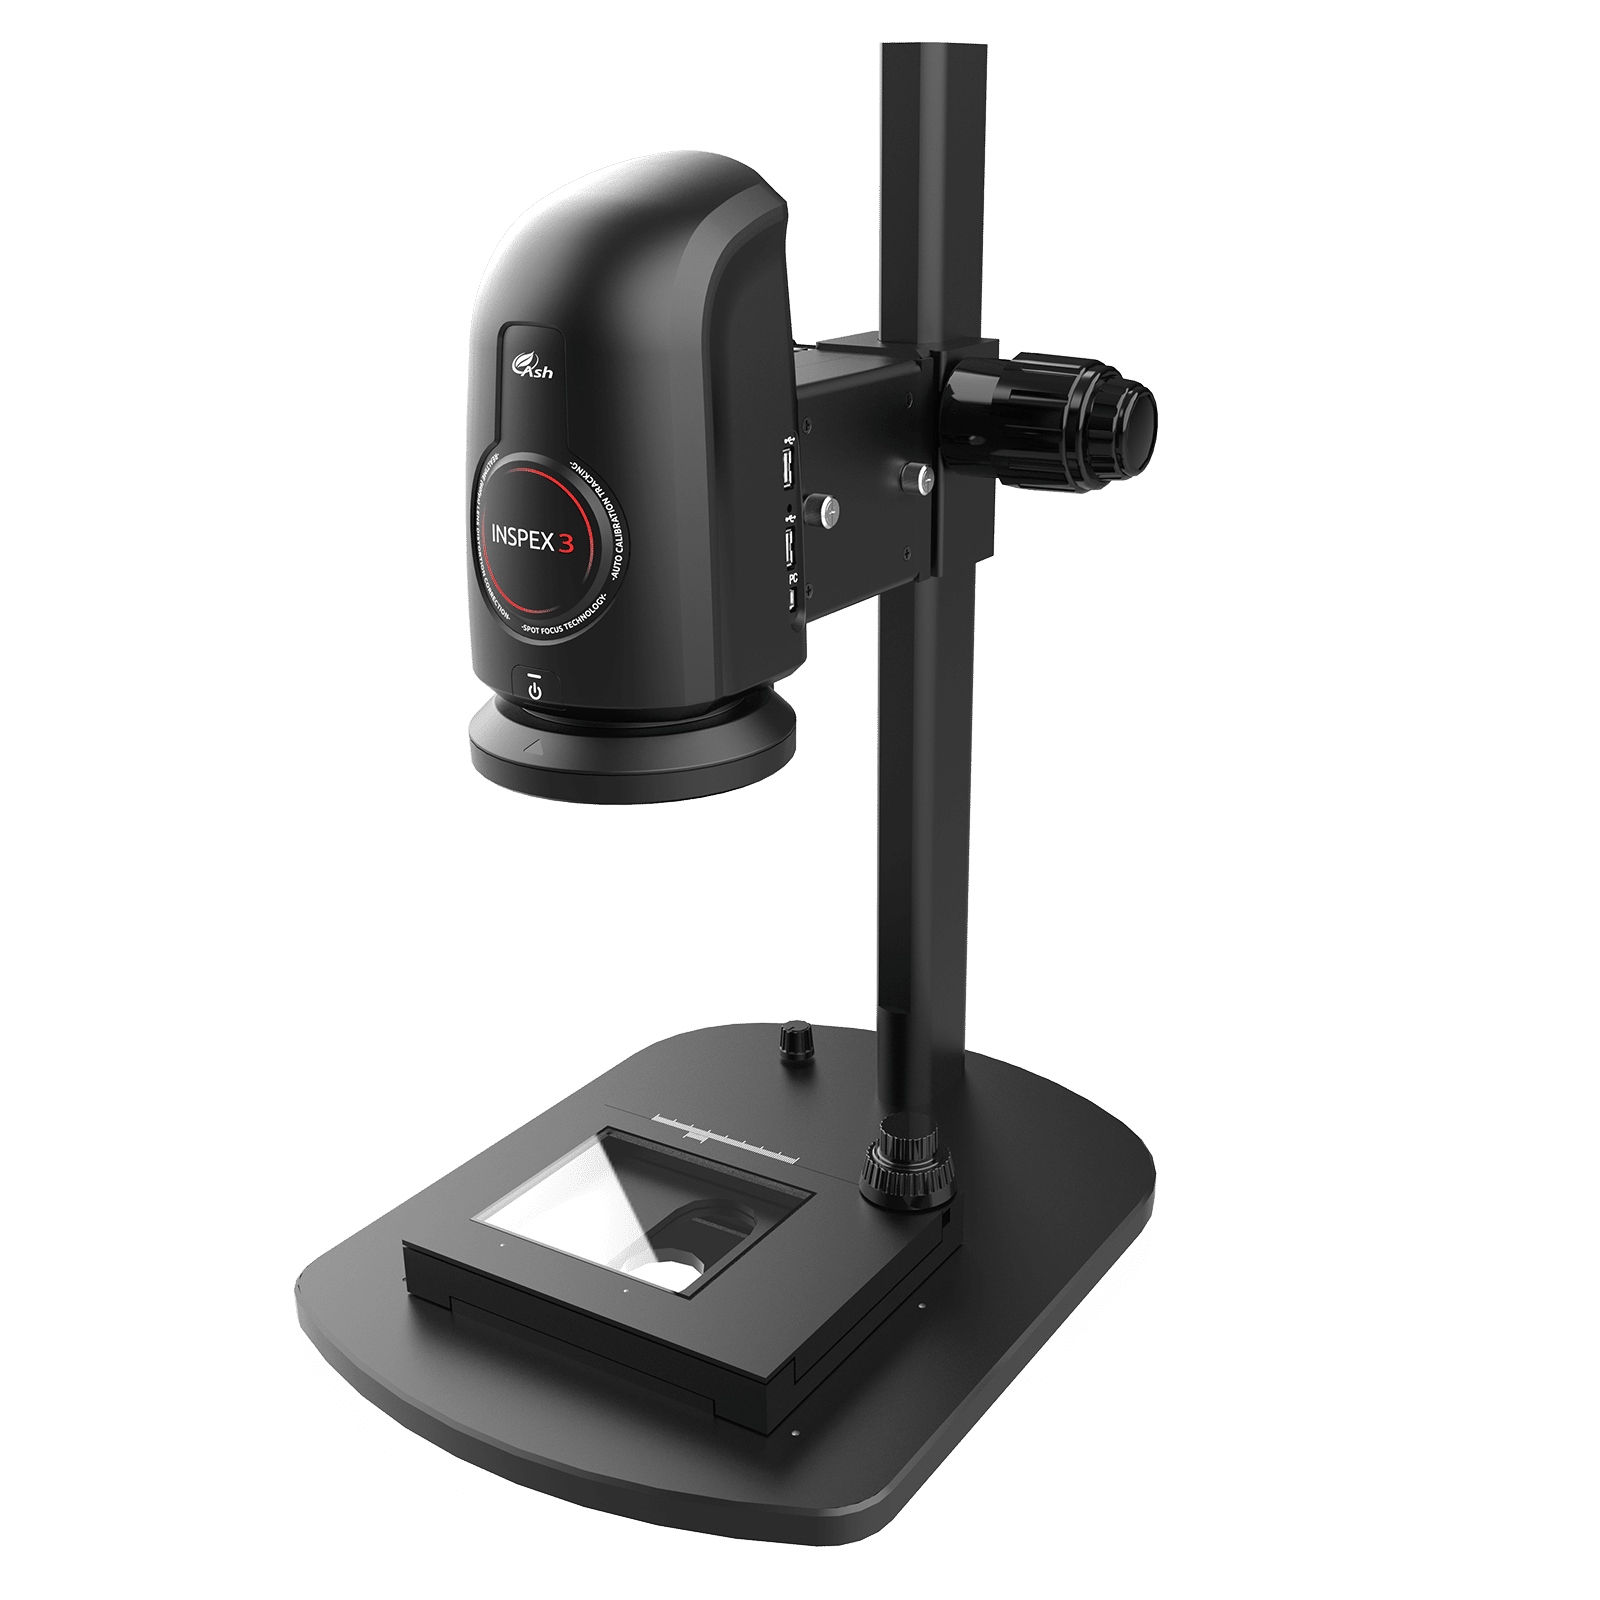 Ash Vision Inspex 3 Digital Mikroskop